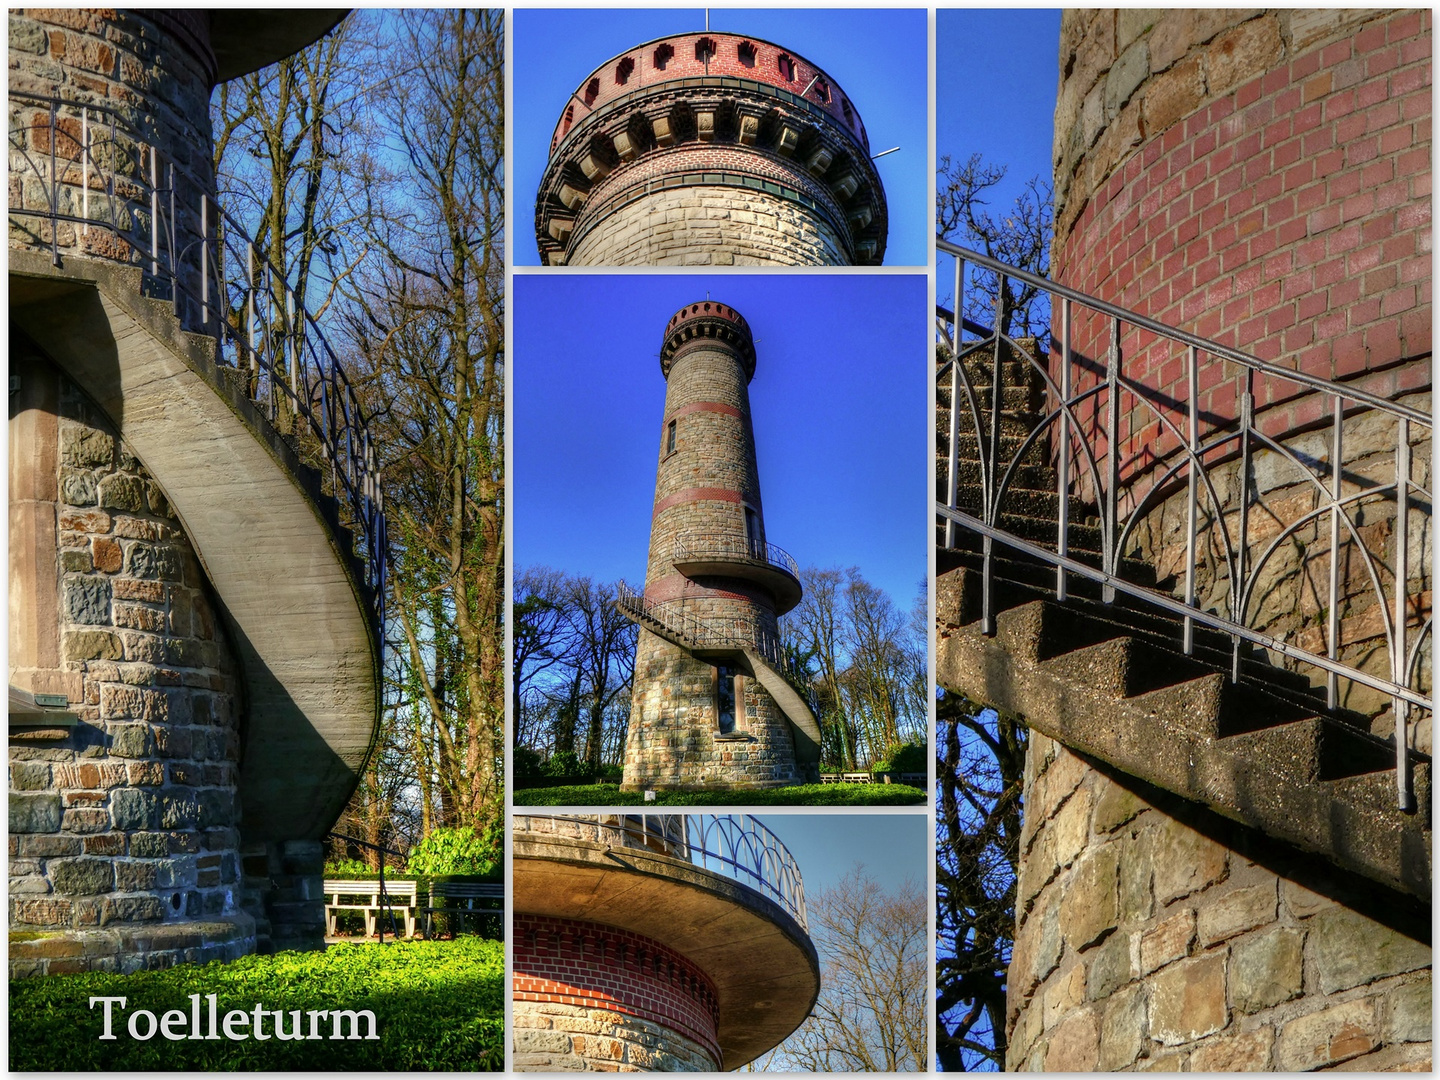 Toelleturm in Wuppertal